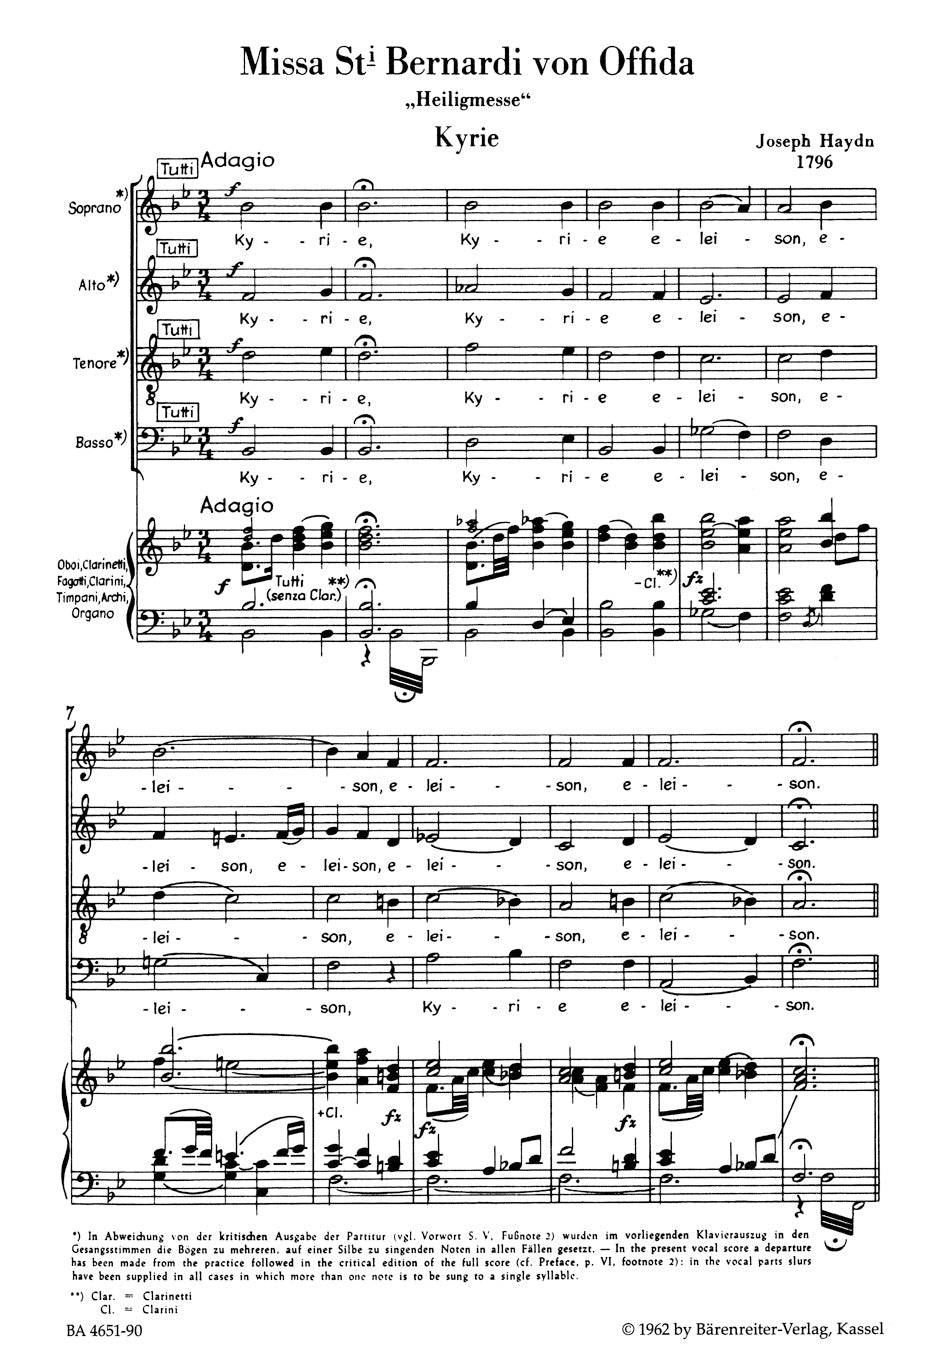 Haydn Missa Sancti Bernardi von Offida  "Heilig-Messe" Vocal Score